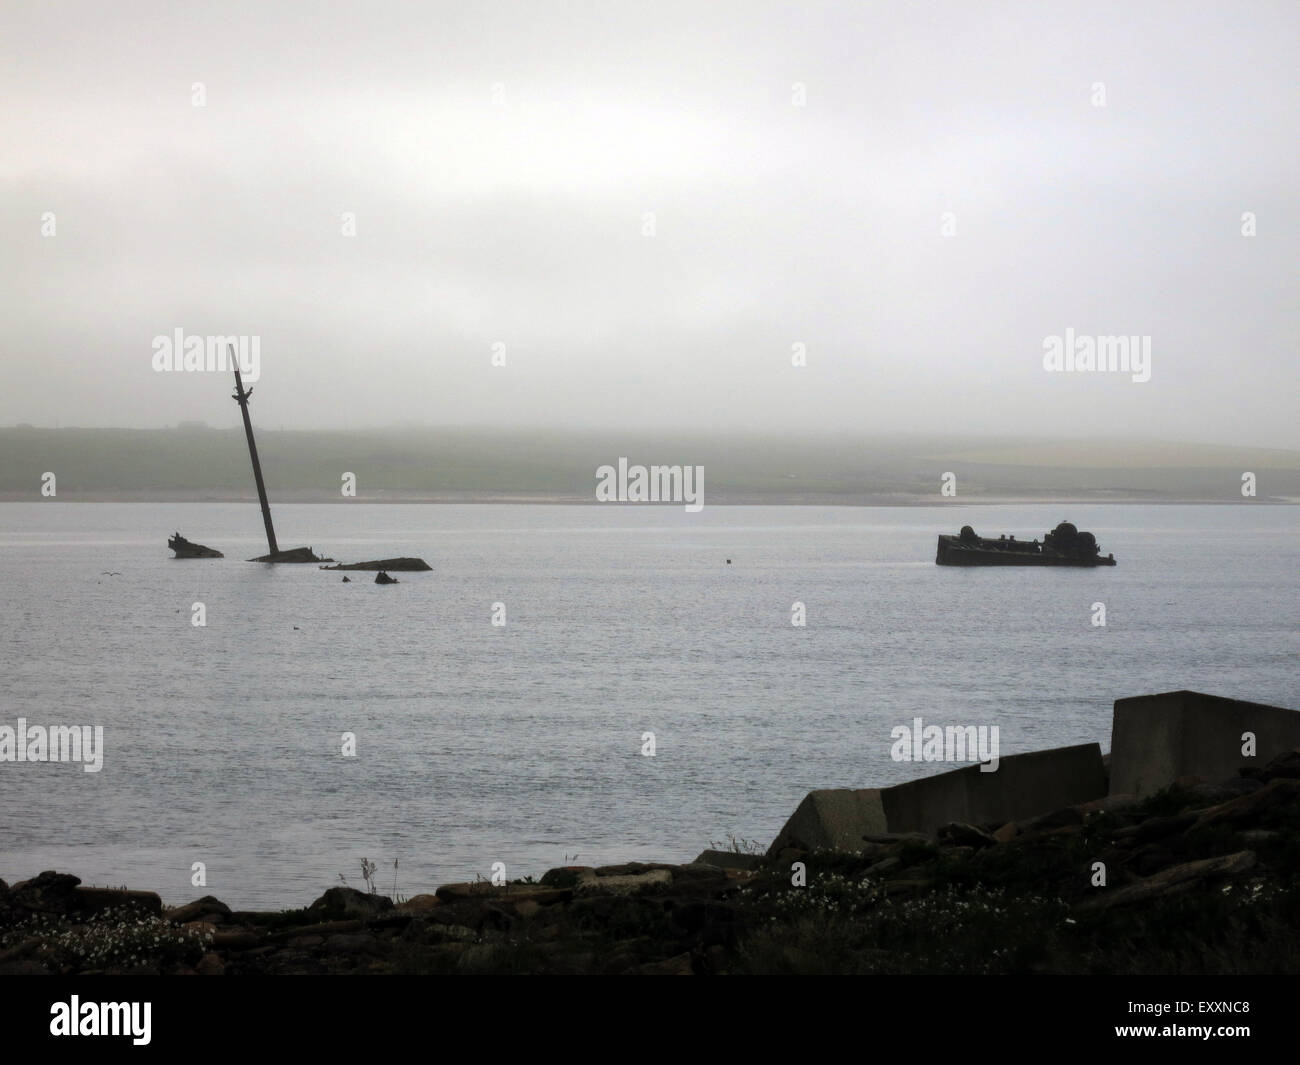 Les coques rouillées dépasse de l'eau dans Scapa Flow sur les îles Orkney, Grande-Bretagne, 16 juin 2014. Navires de la marine britannique bloquaient la zone d'accès à la baie après avoir été coulé. Ils servent maintenant comme un site de plongée. Photo : Franz-Peter Tschauner/DPA - AUCUN FIL SERVICE - Banque D'Images